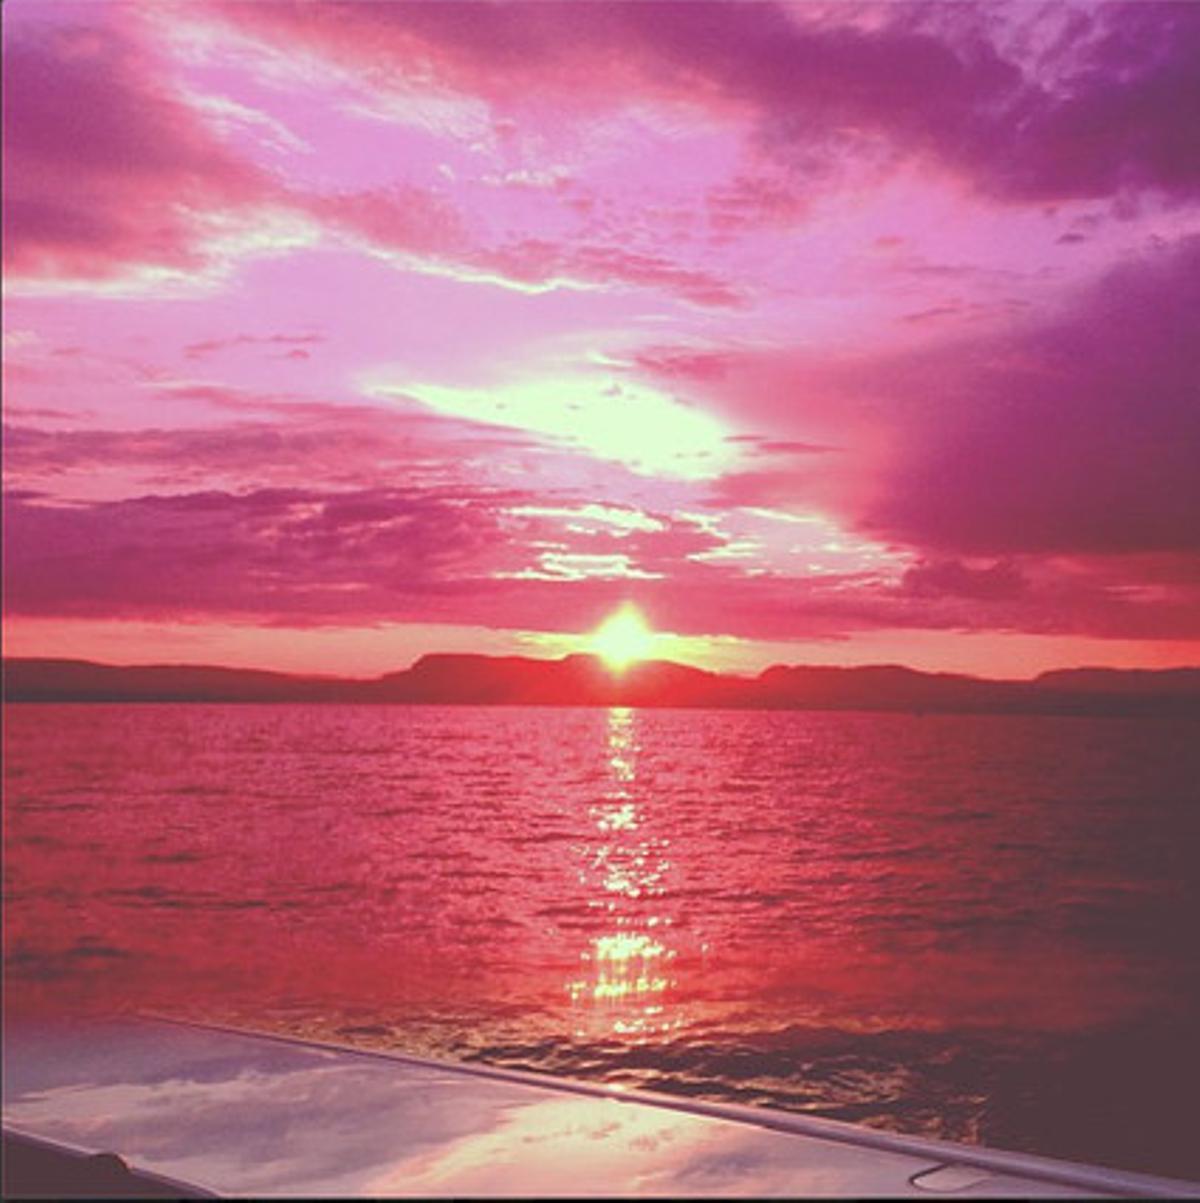 Imatge que va publicar Rihanna en la seva escapada a Oslo. S’hi pot veure l’immens mar i la posta de sol, que té un to rosat per la visera amb què la cantant va fer la foto i que va utilitzar com a filtre.